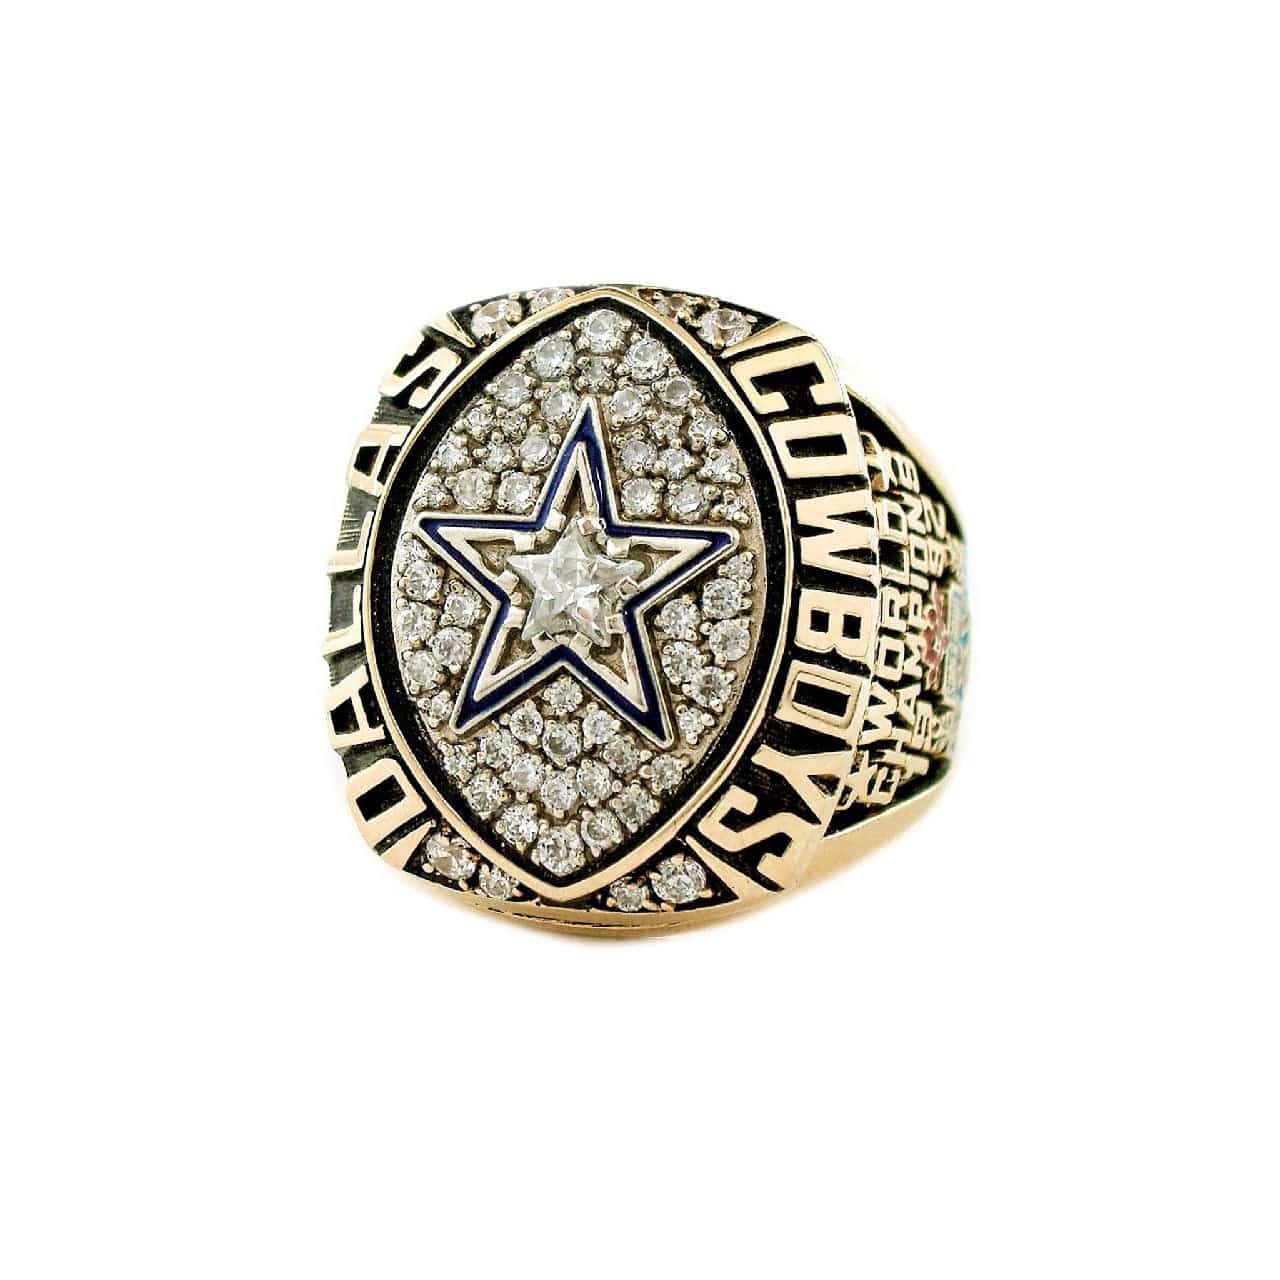 1992 Dallas Cowboys NFL Super Bowl Ring